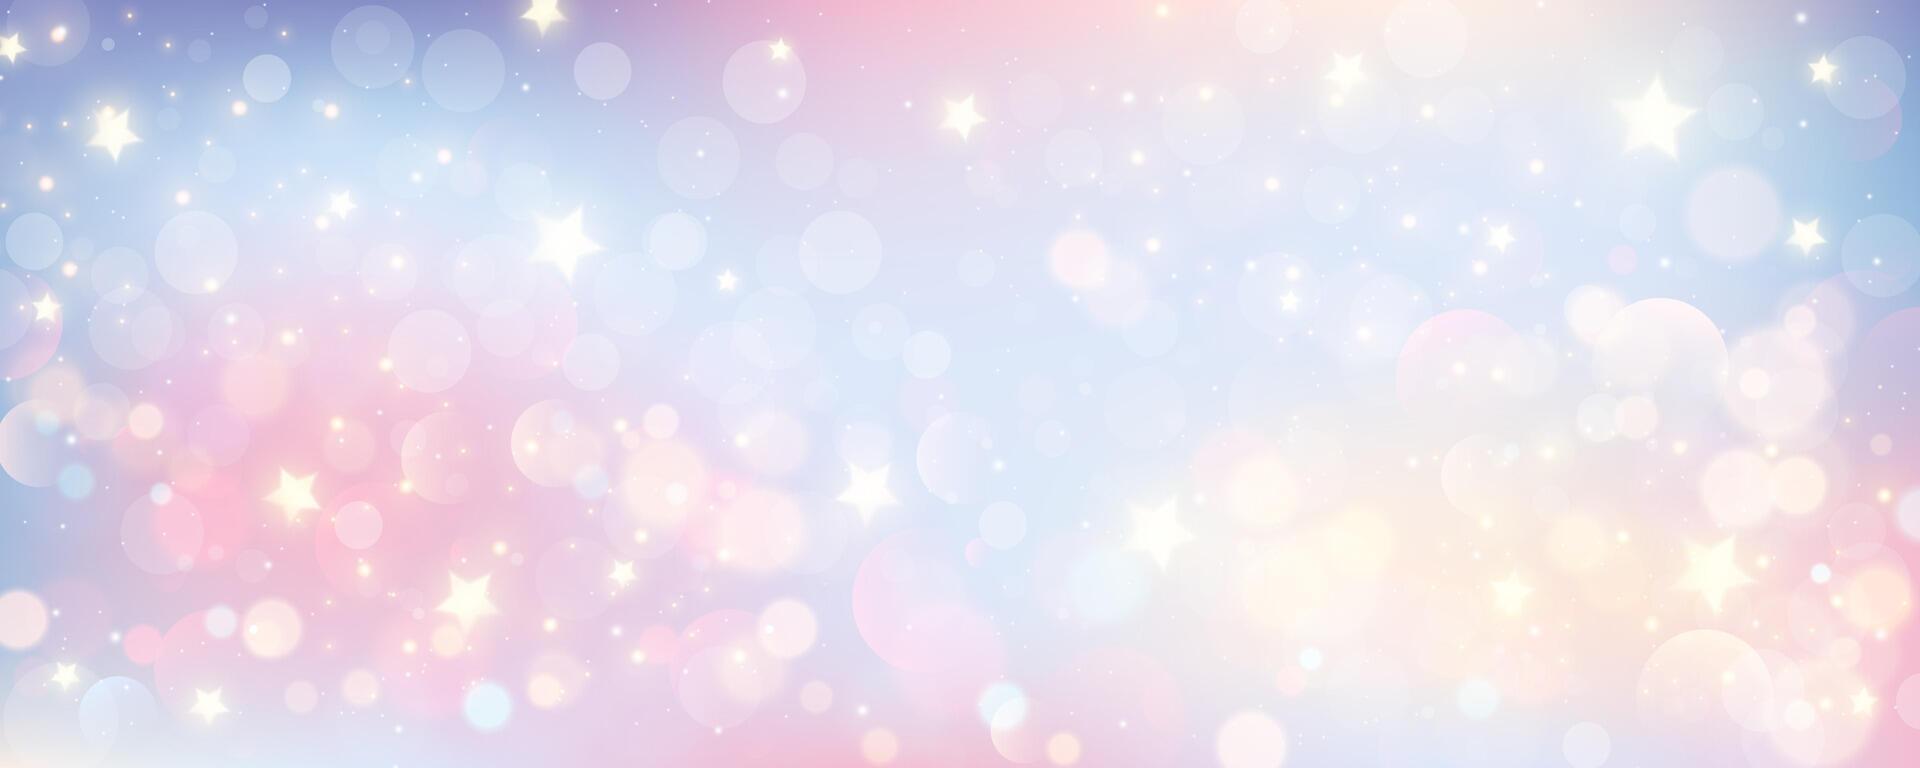 bokeh lucht achtergrond. licht roze pastel heelal abstract behang met schitteren sterren. fantasie ruimte met schittert. vector